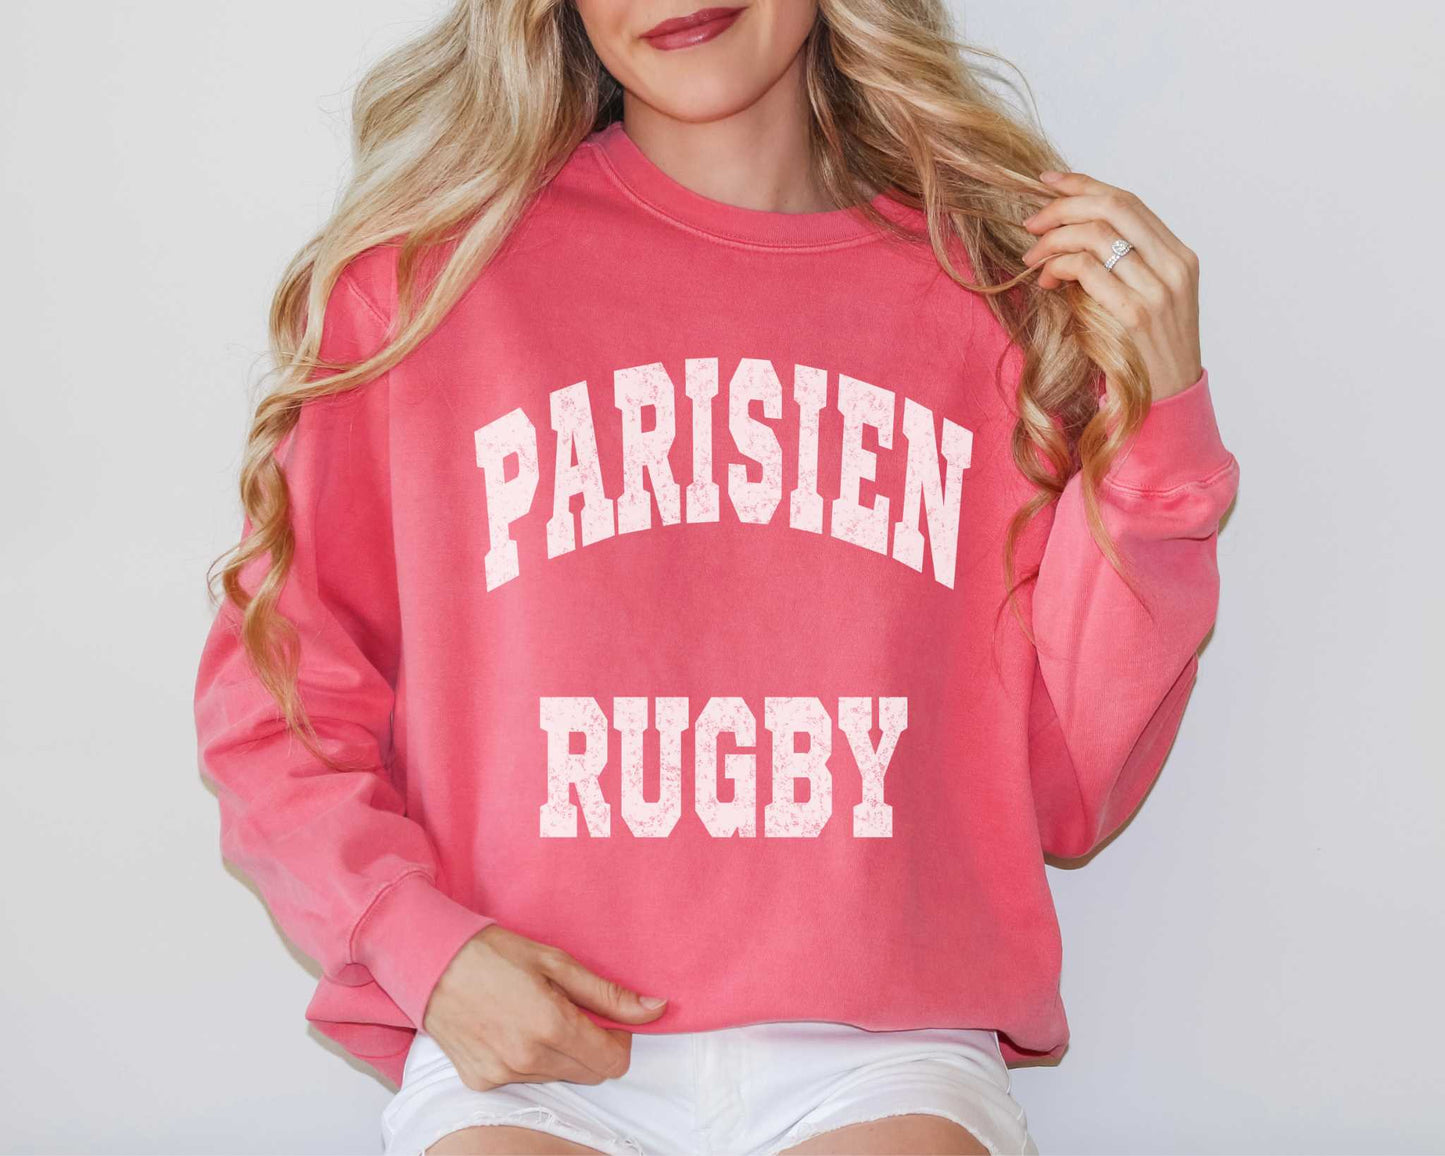 Parisien Rugby Sweatshirt in Watermelon